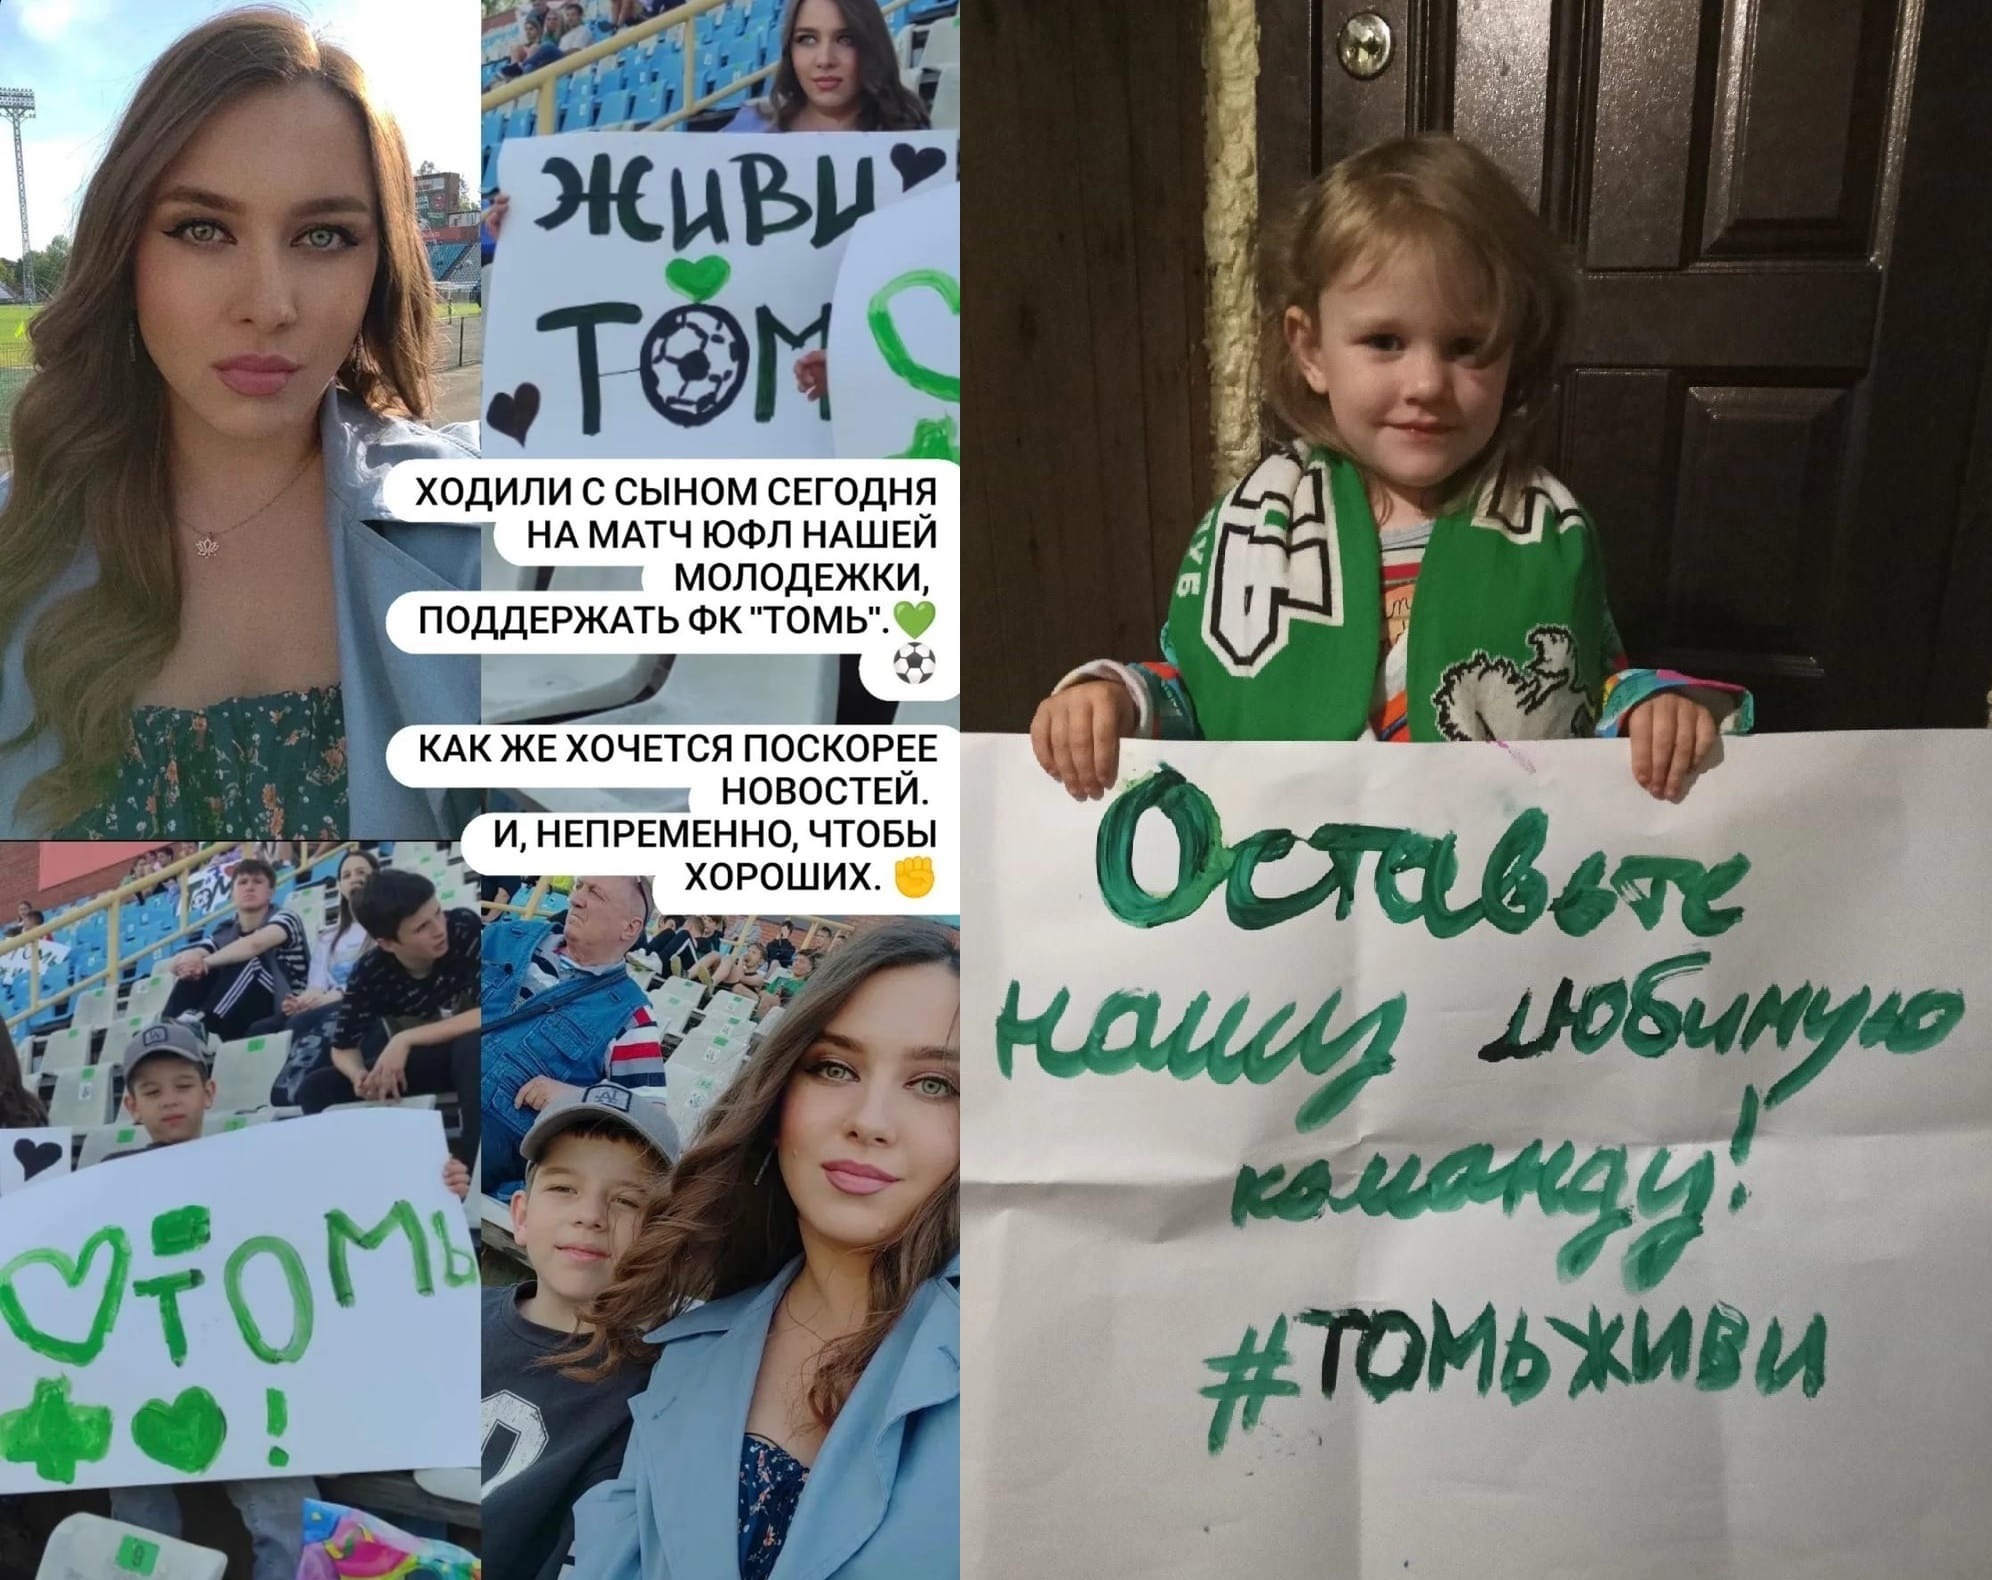 «#ТомьЖиви»: болельщики пришли на матч томской молодежки с плакатами в поддержку клуба